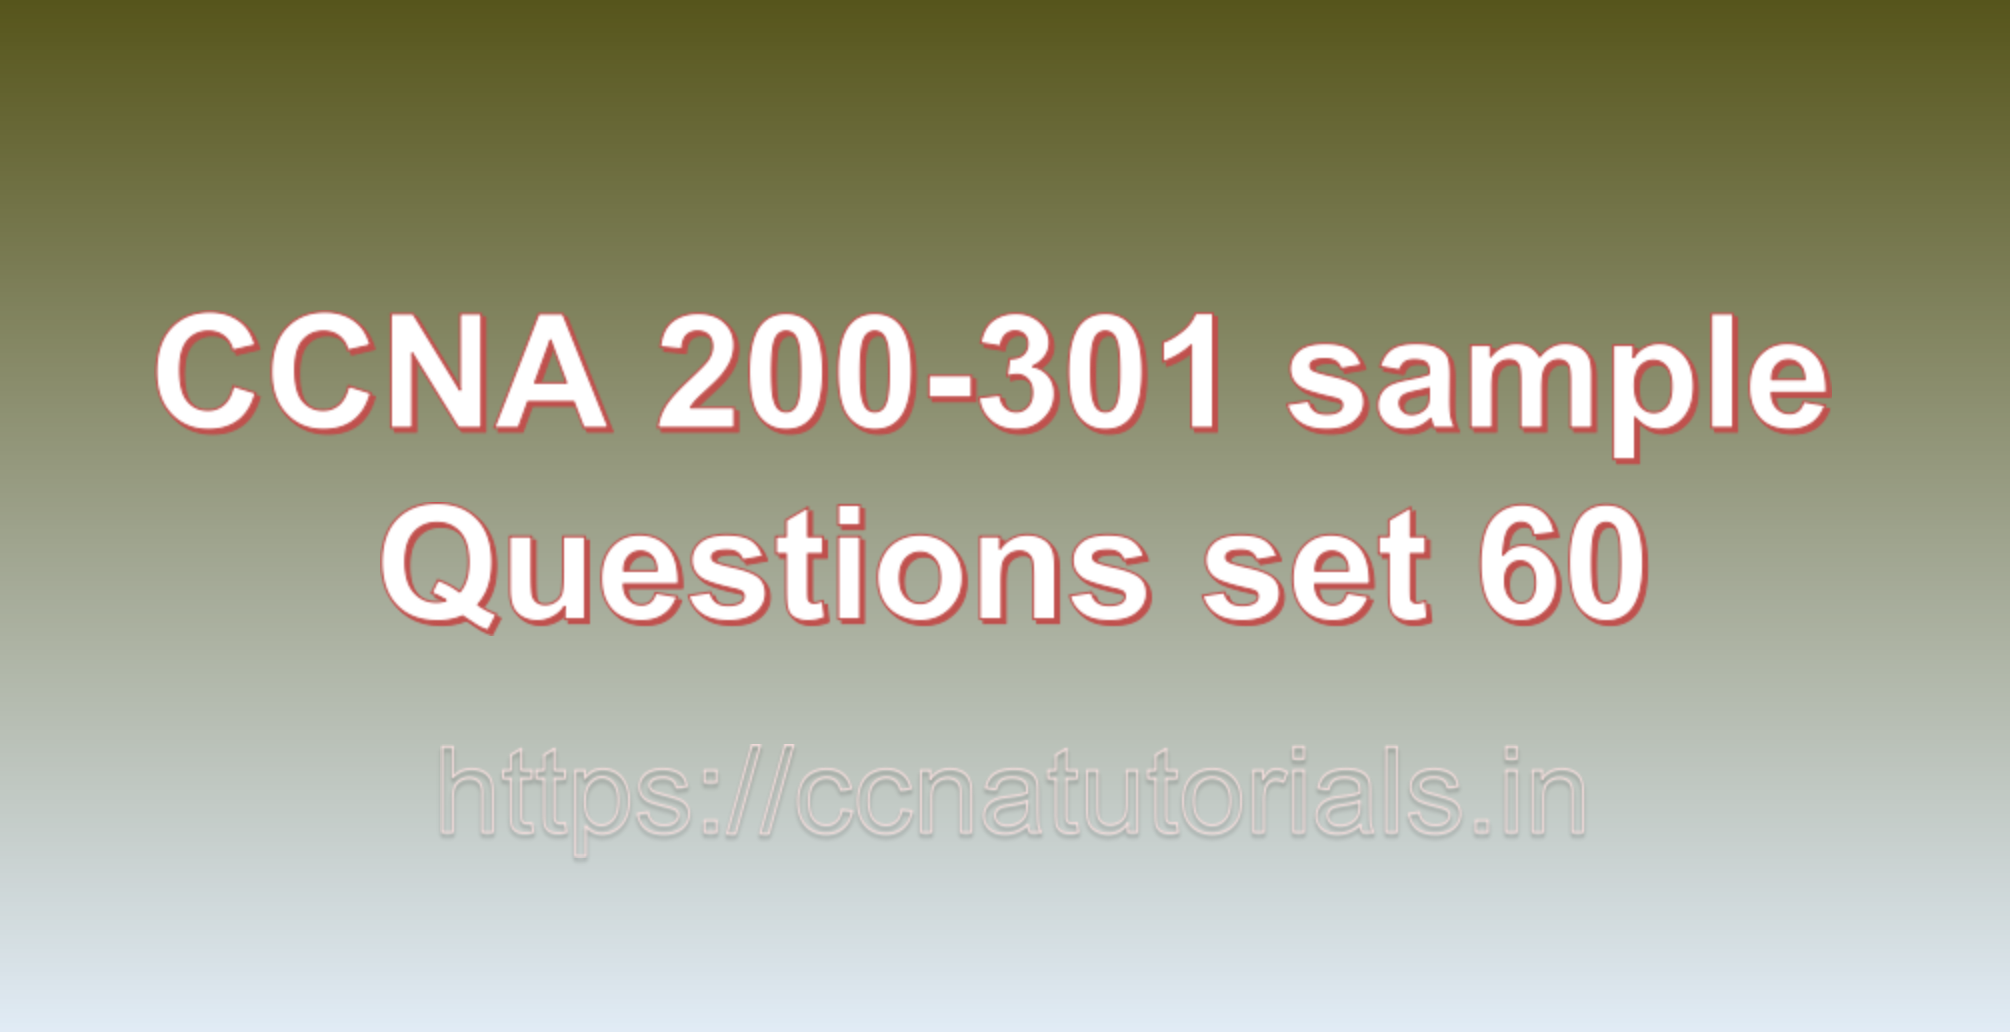 ccna sample questions set 60, ccna tutorials, CCNA Exam, ccna